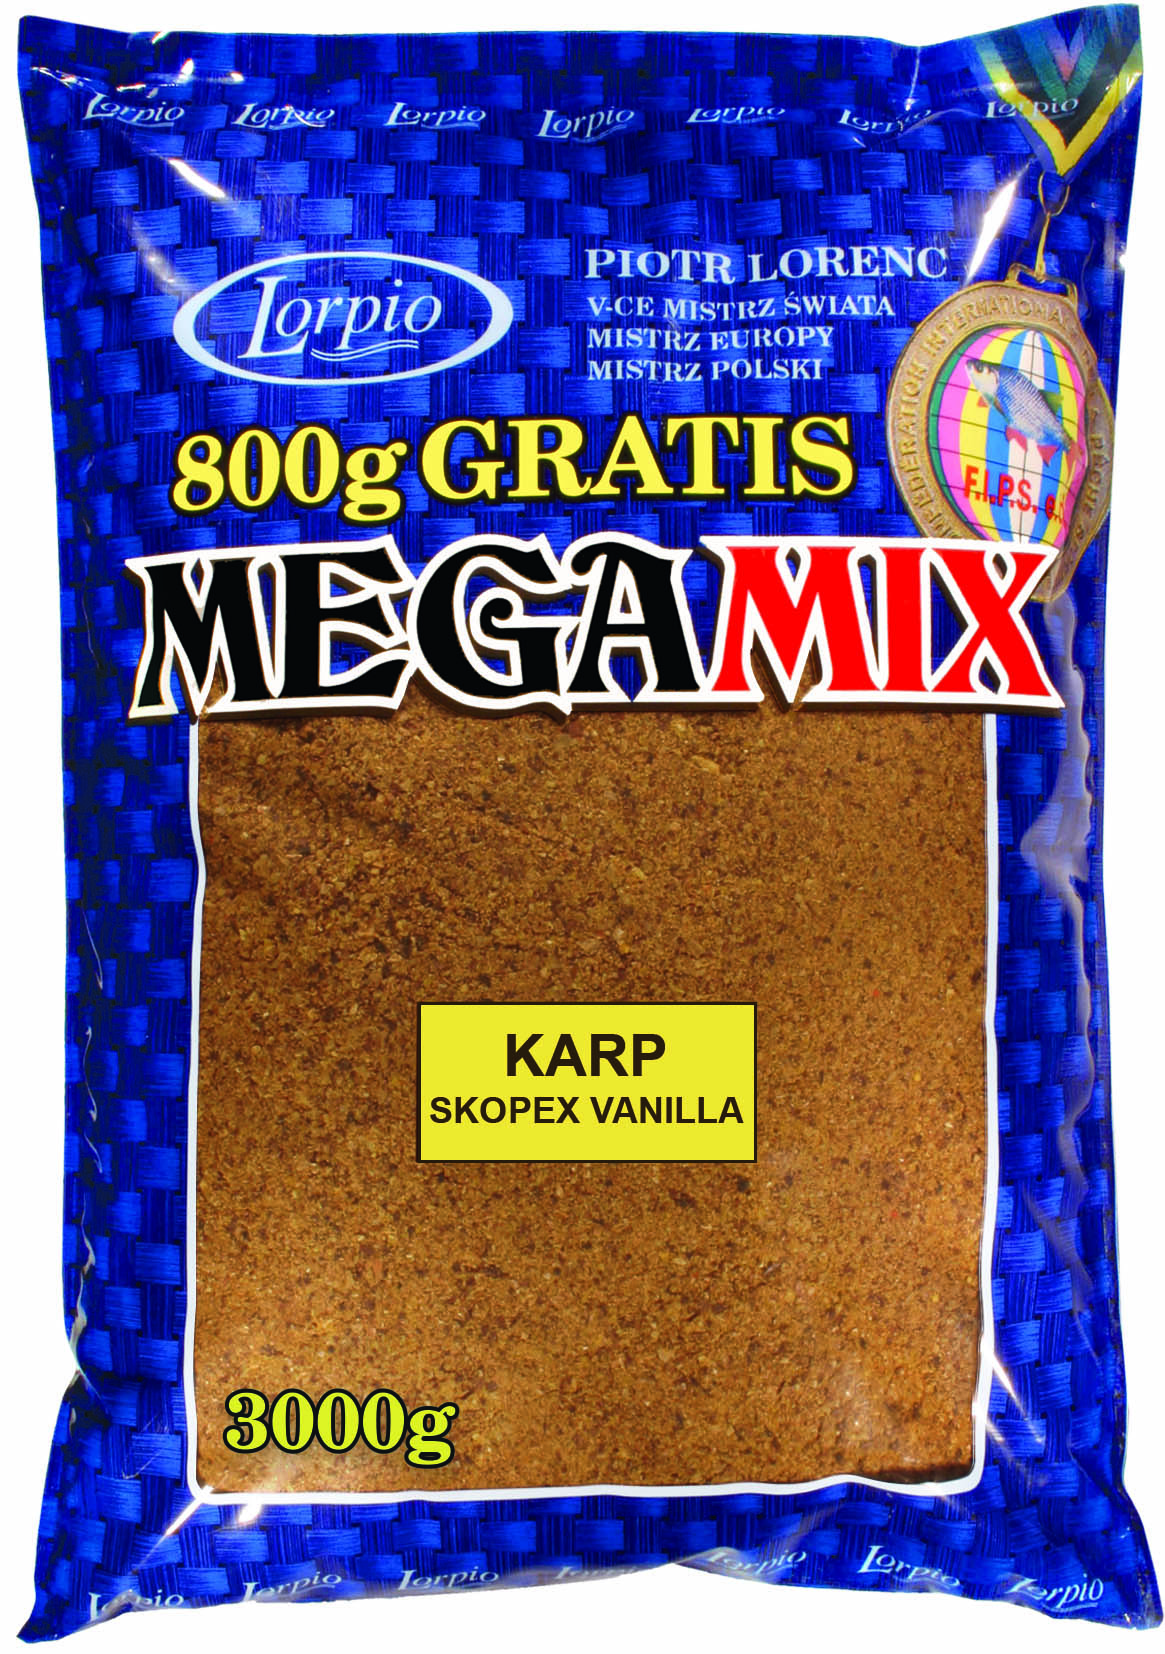 Lorpio megamix 3 kg